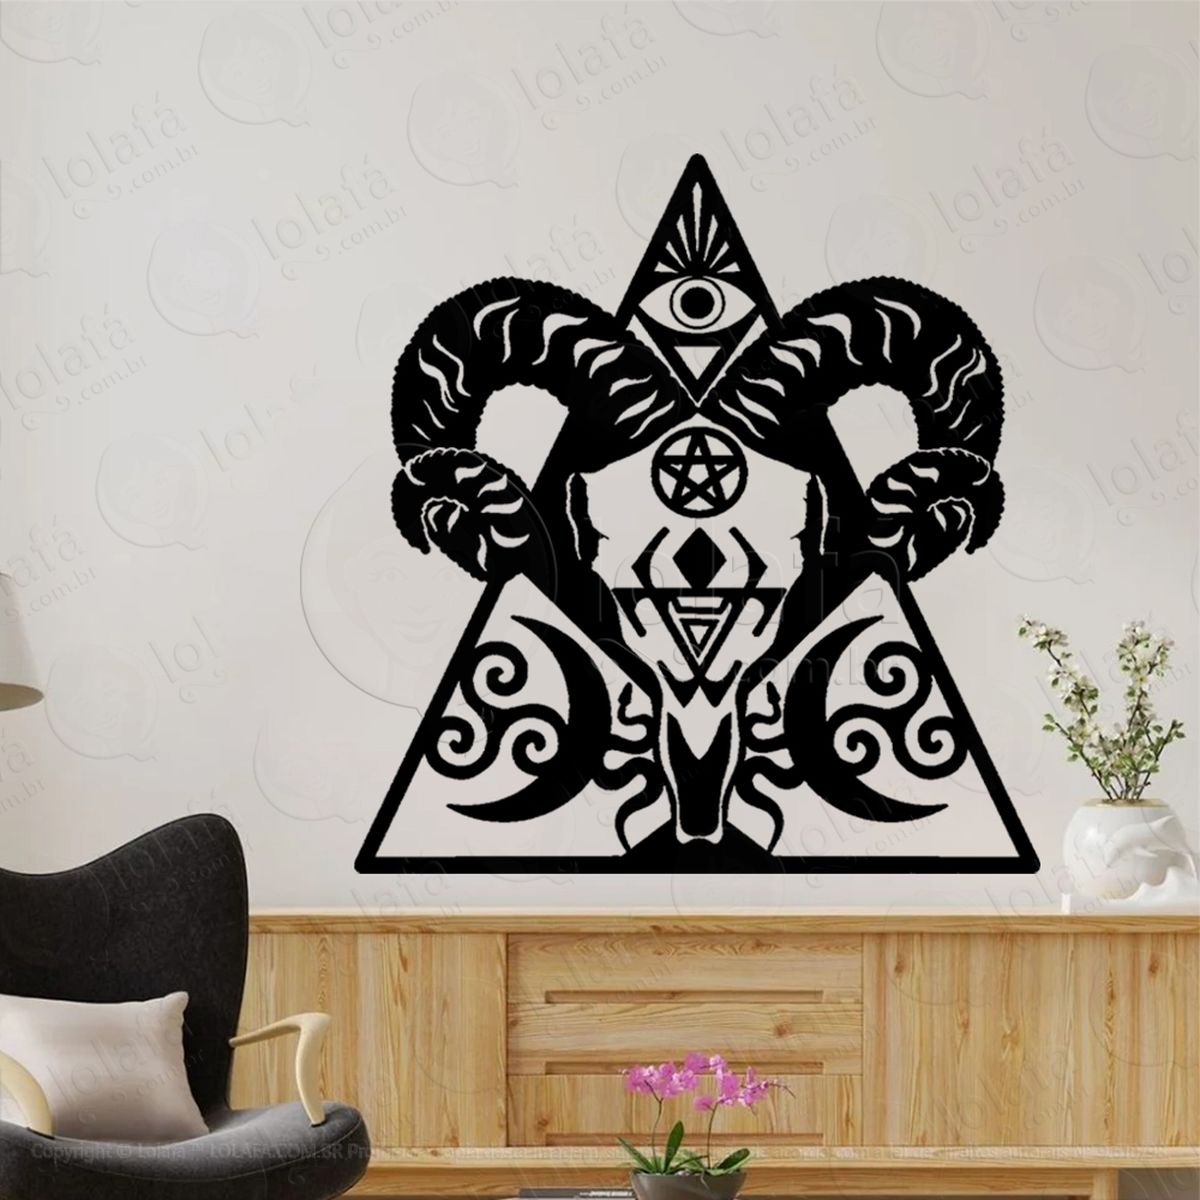 illuminati baphomet símbolo pagão adesivo de parede decorativo para casa, sala, quarto, vidro e altar ocultista - mod:299